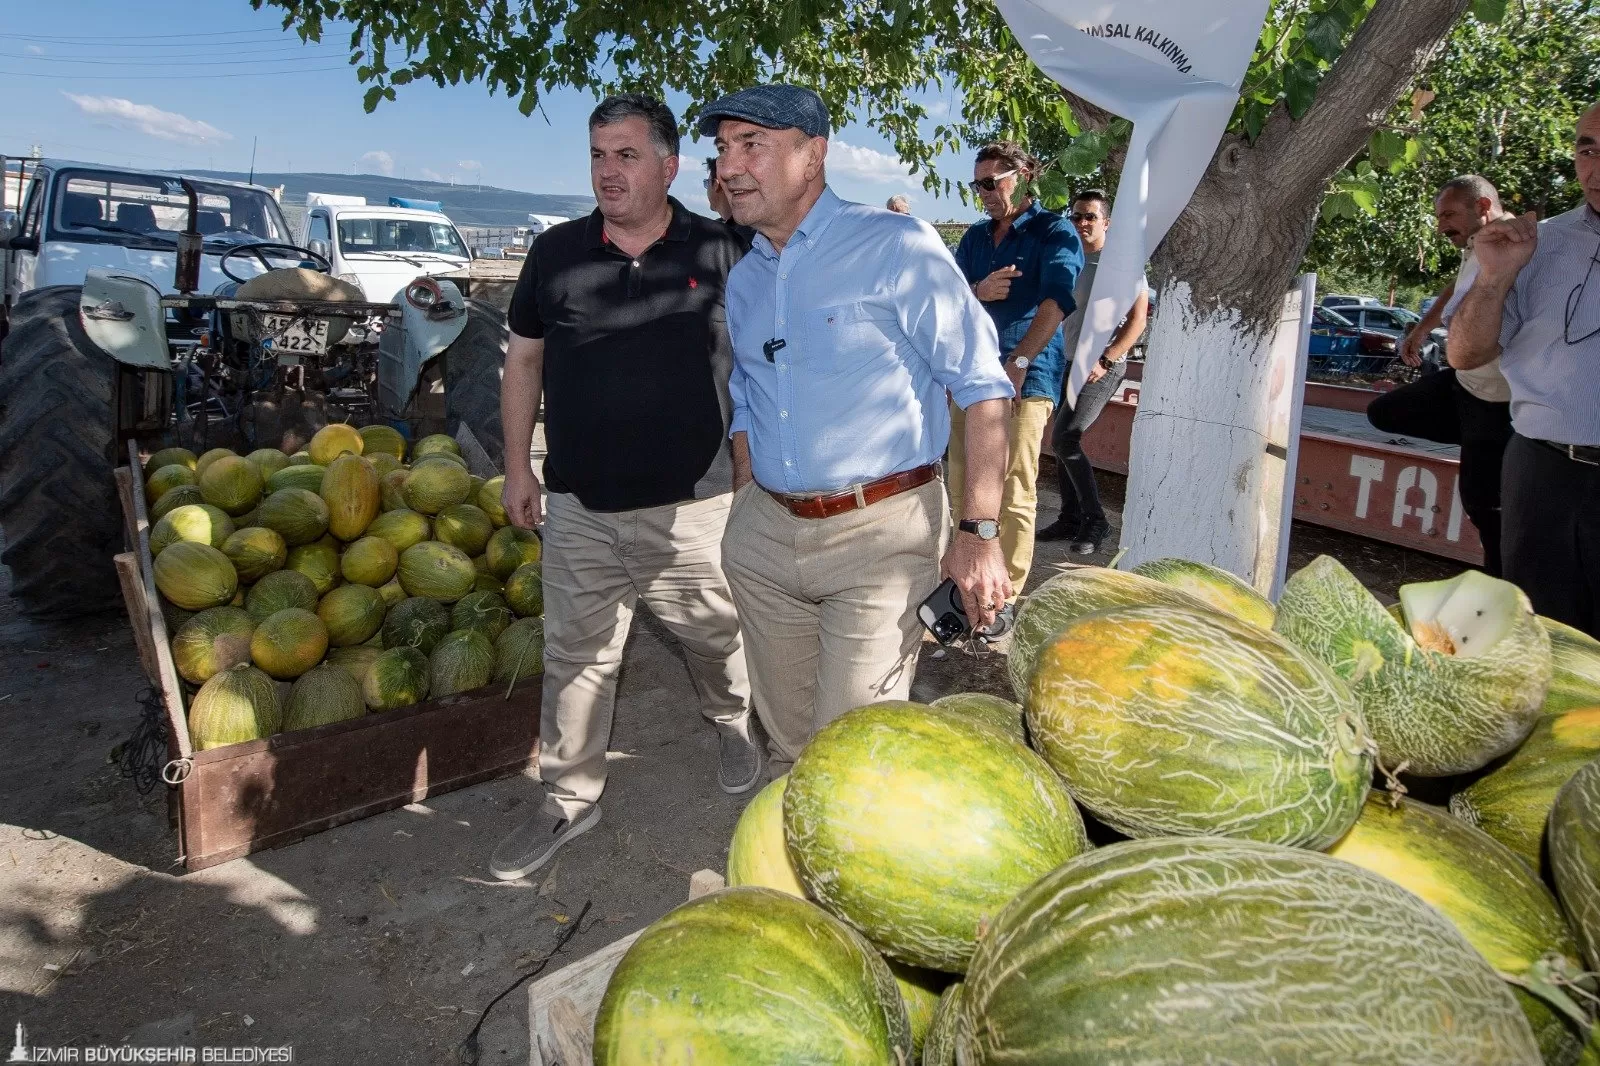 İzmir Büyükşehir Belediye Başkanı Tunç Soyer, Kınık’ta düzenlenen salçalık domates ve karpuz hasadı etkinliğine katıldı. 